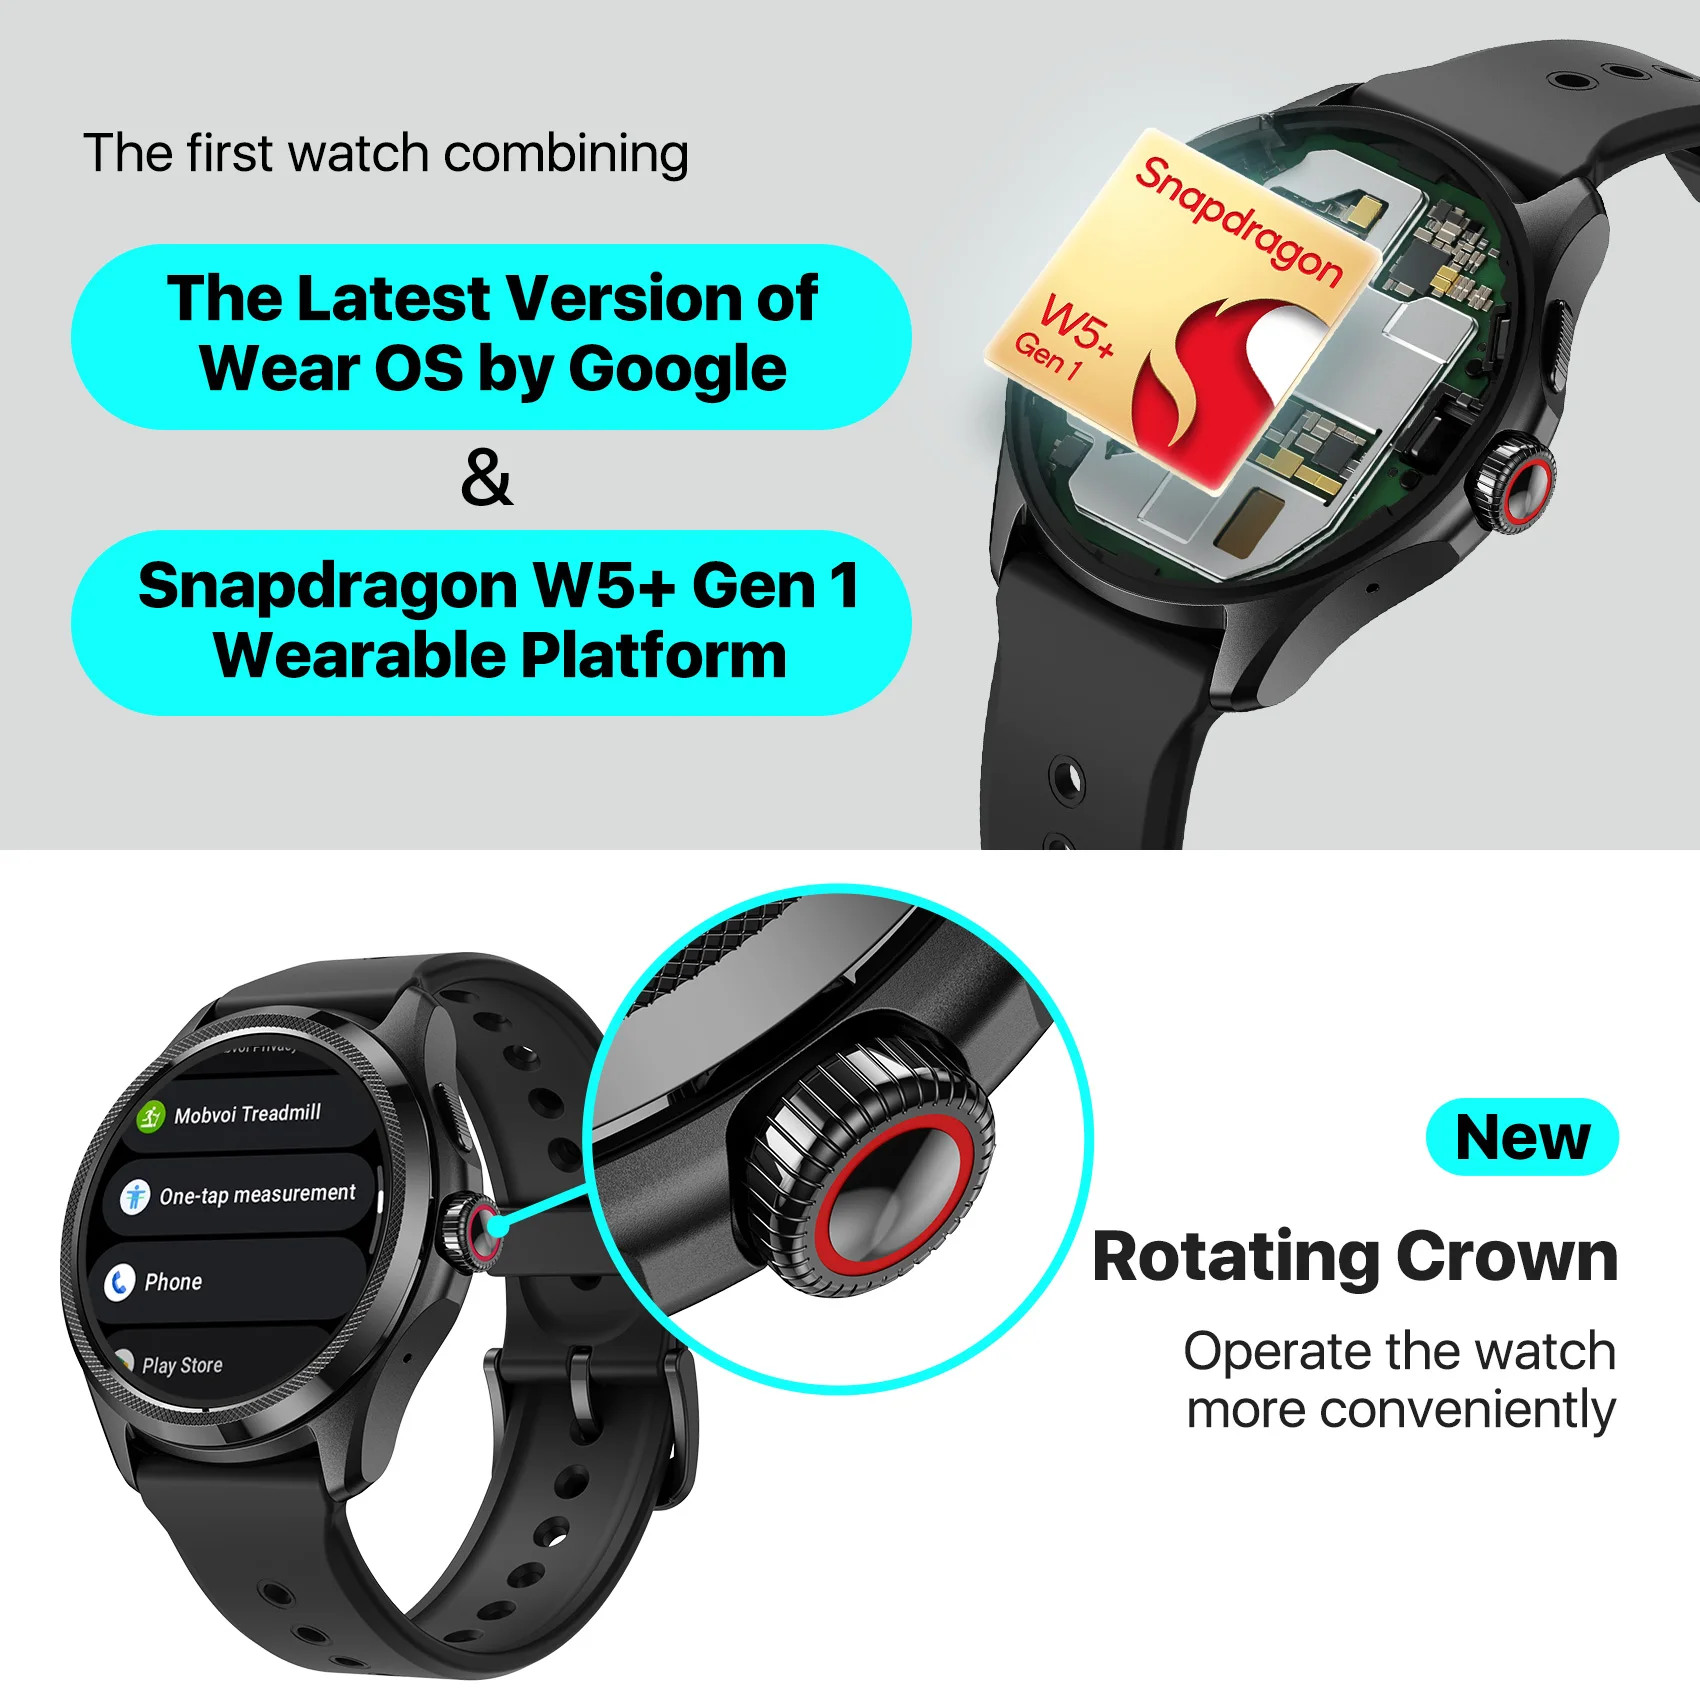 Ticwatch pro 5 opotřebení OS chytré hodinky postaven 100+ sportovní režimech 5ATM water-resistance kompas NFC a 80hrs baterie život pro Android